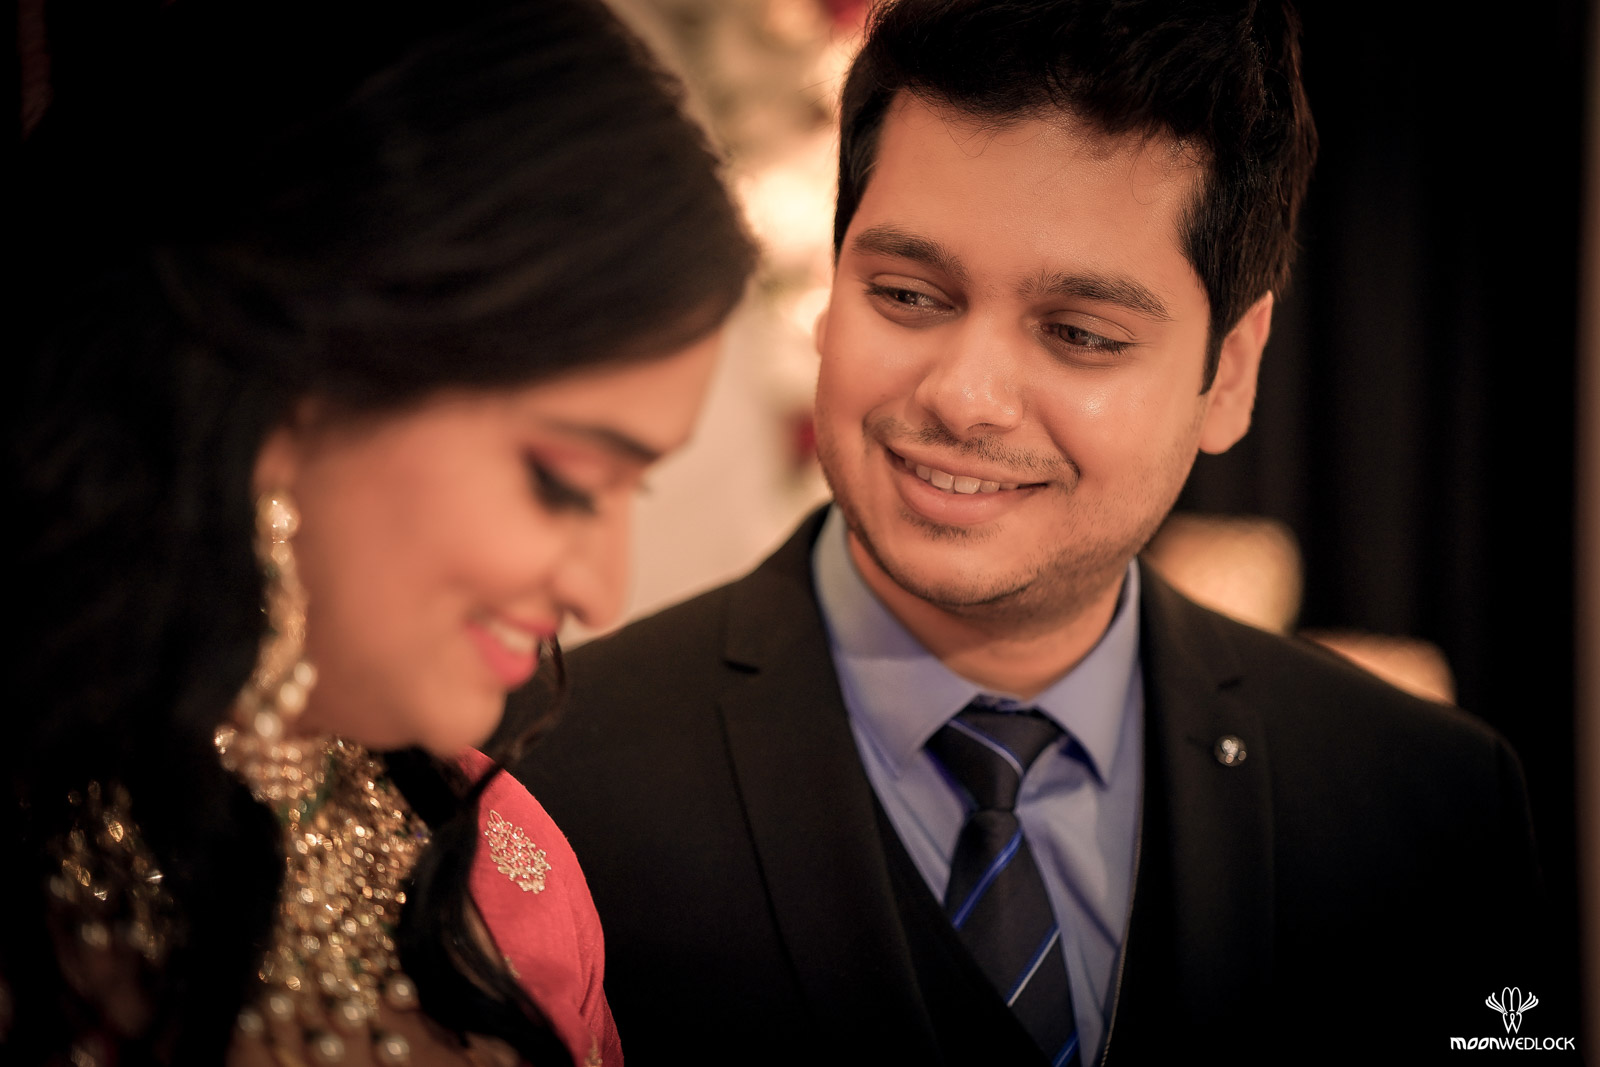 bangalore-wedding-photographers-moonwedlock (18)